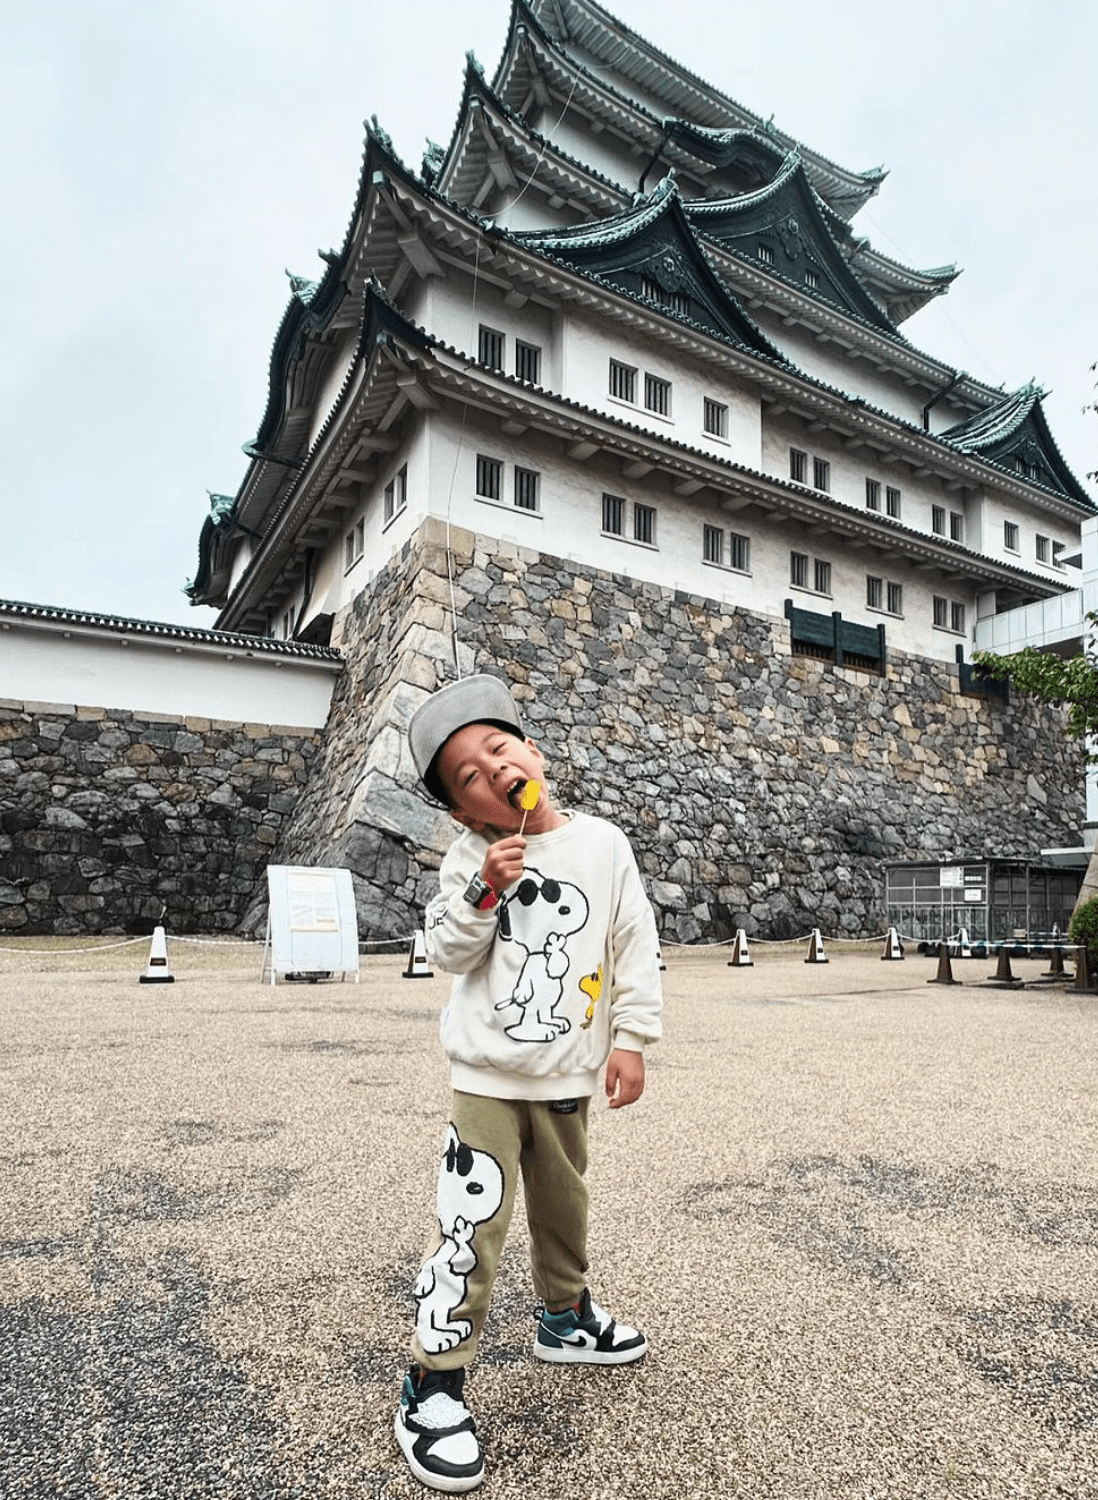 Cities In Japan - Nagoya Castle